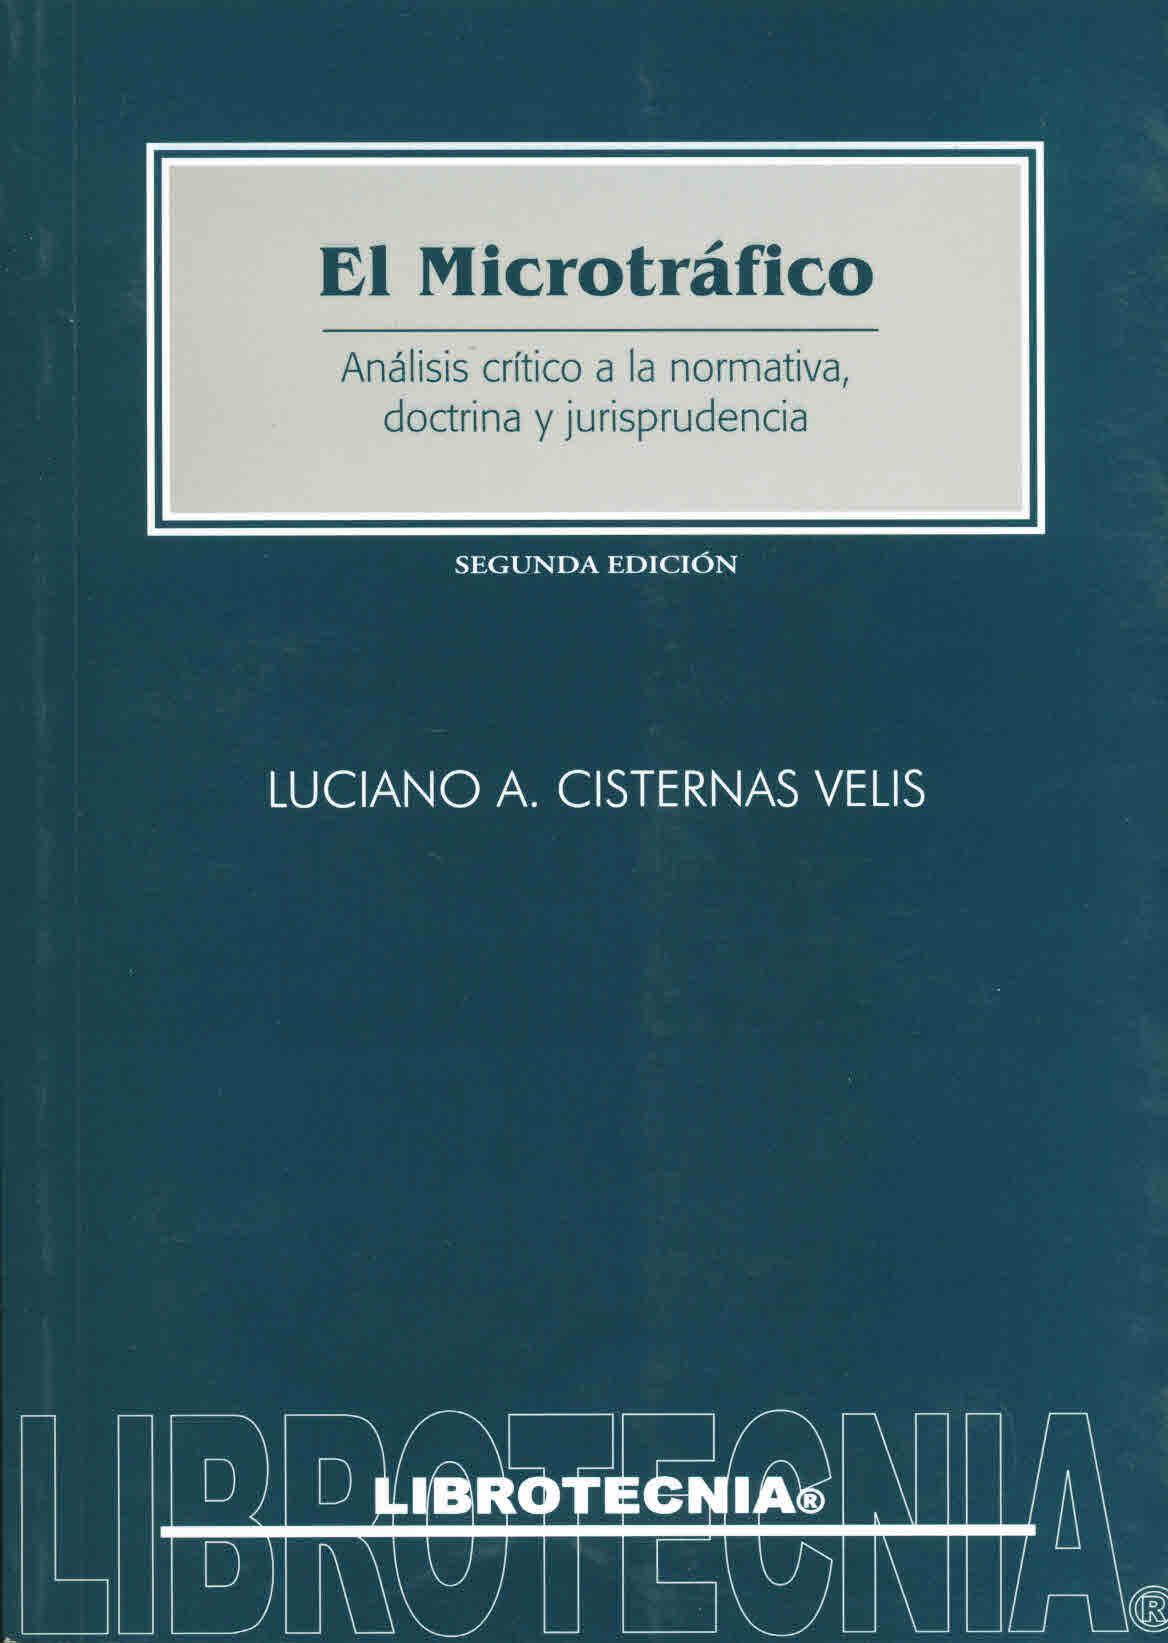 El microtráfico, análisis crítico a la normativa, doctrina y jurisprudencia